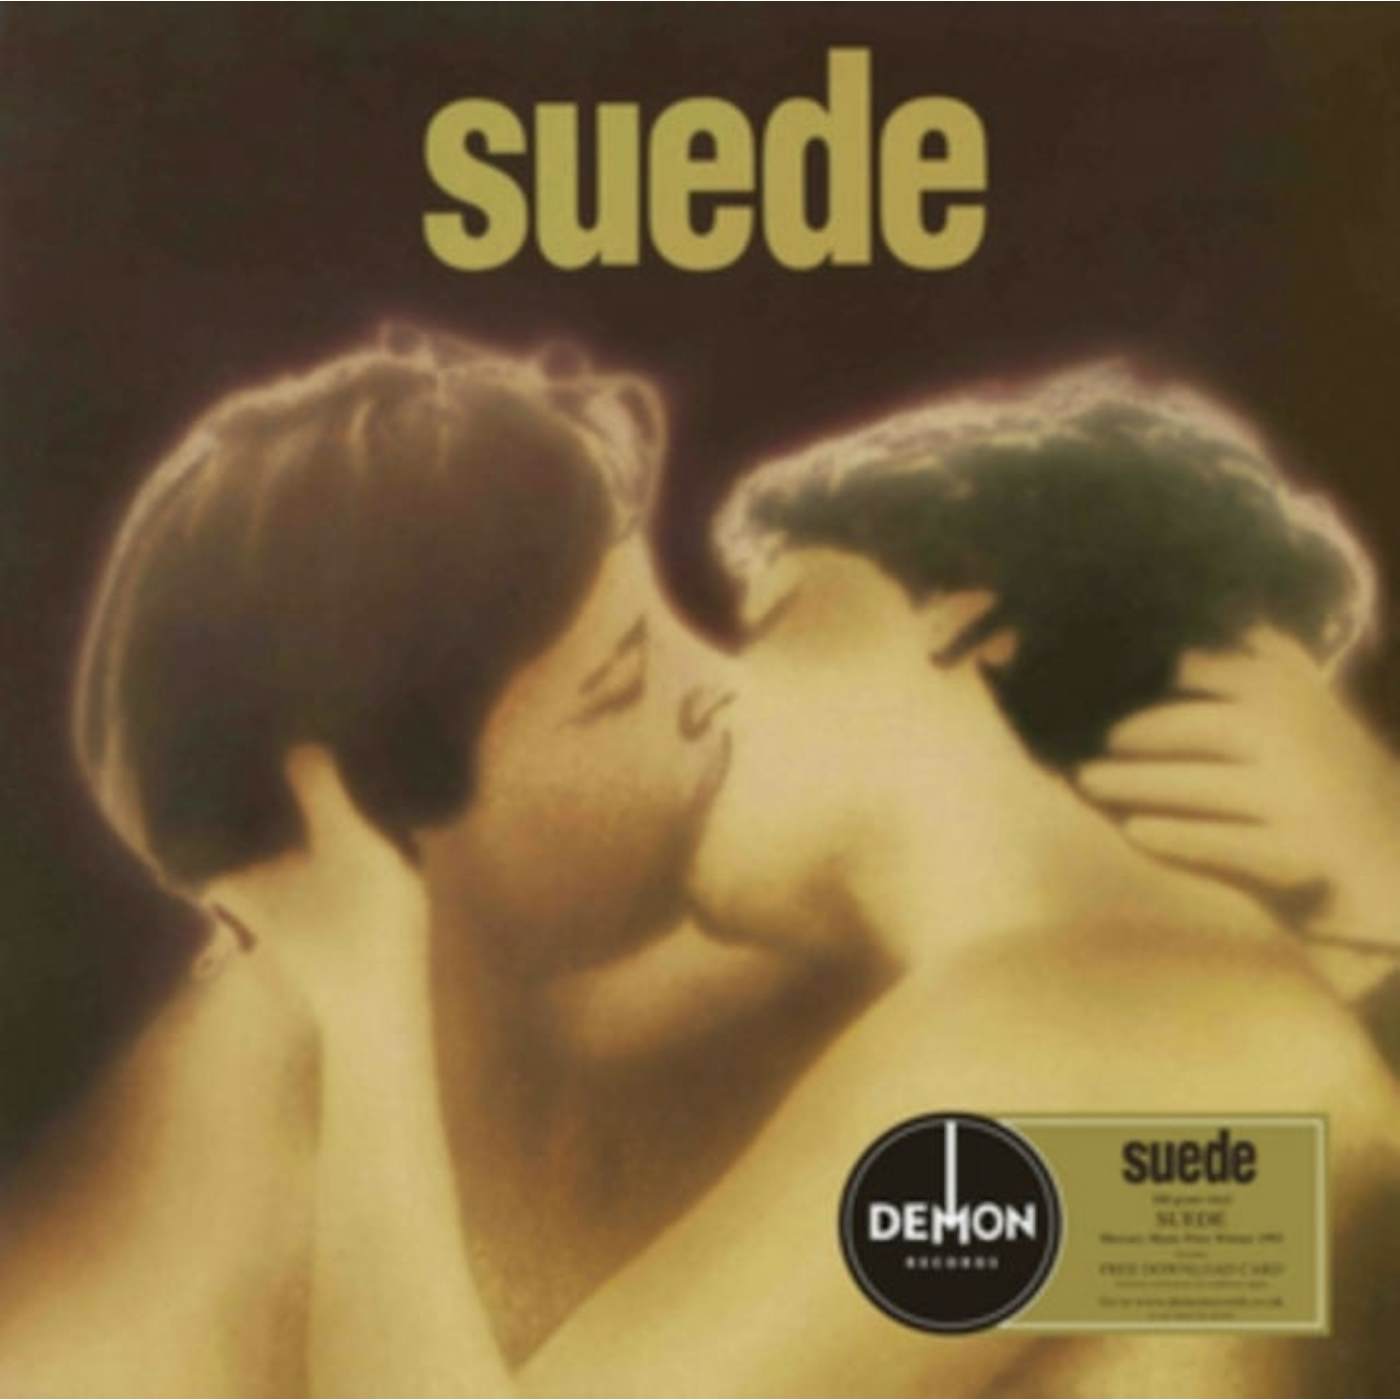 Suede LP Vinyl Record - Suede